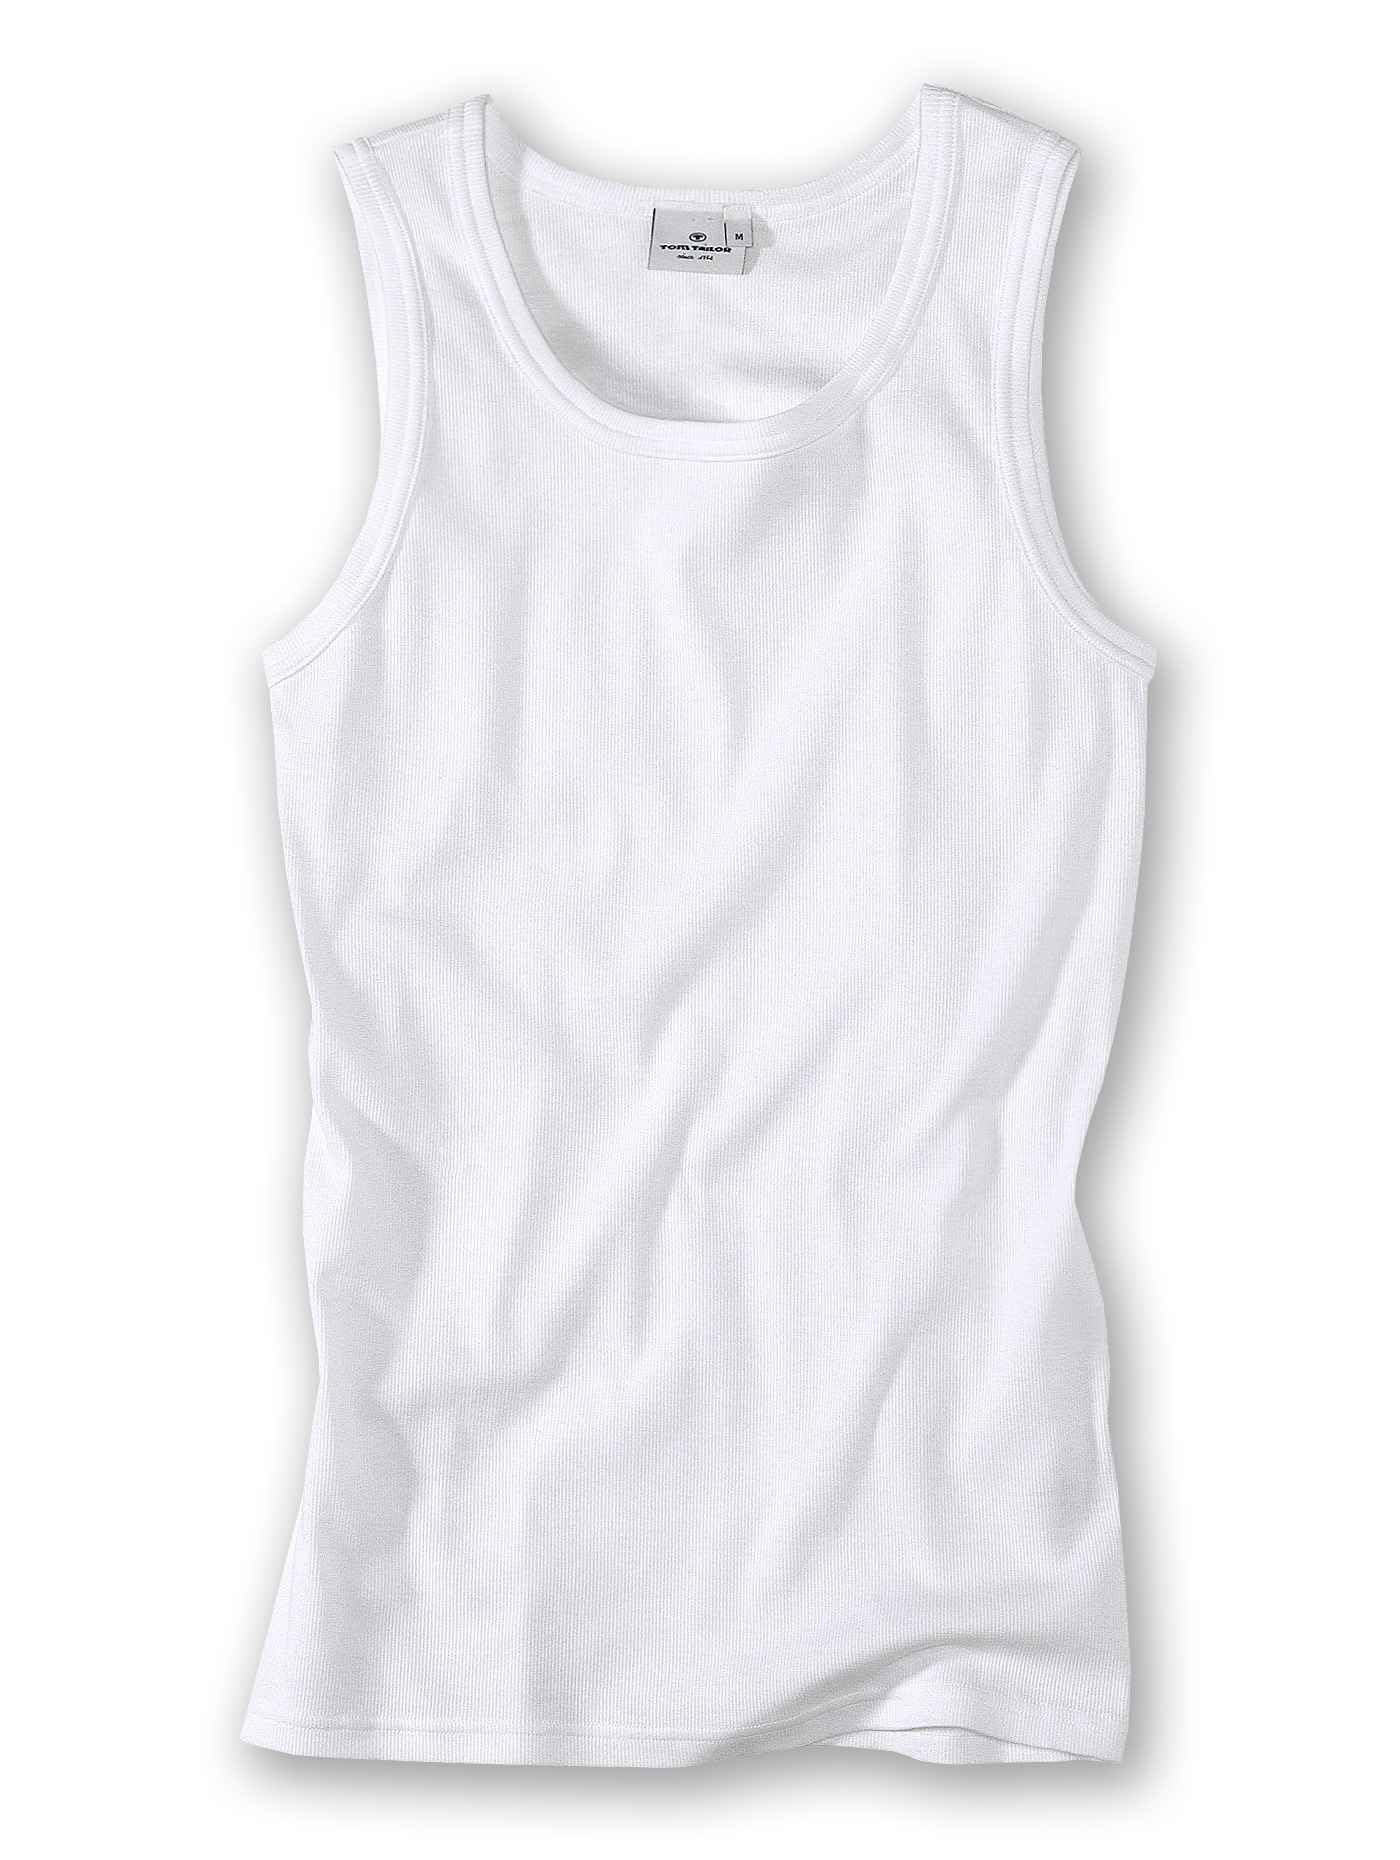 Tom Tailor Underwear Herren Tanktop 2er Pack Unterhemd, weiß-1000, XX-Large (Herstellergröße: XXL/8)